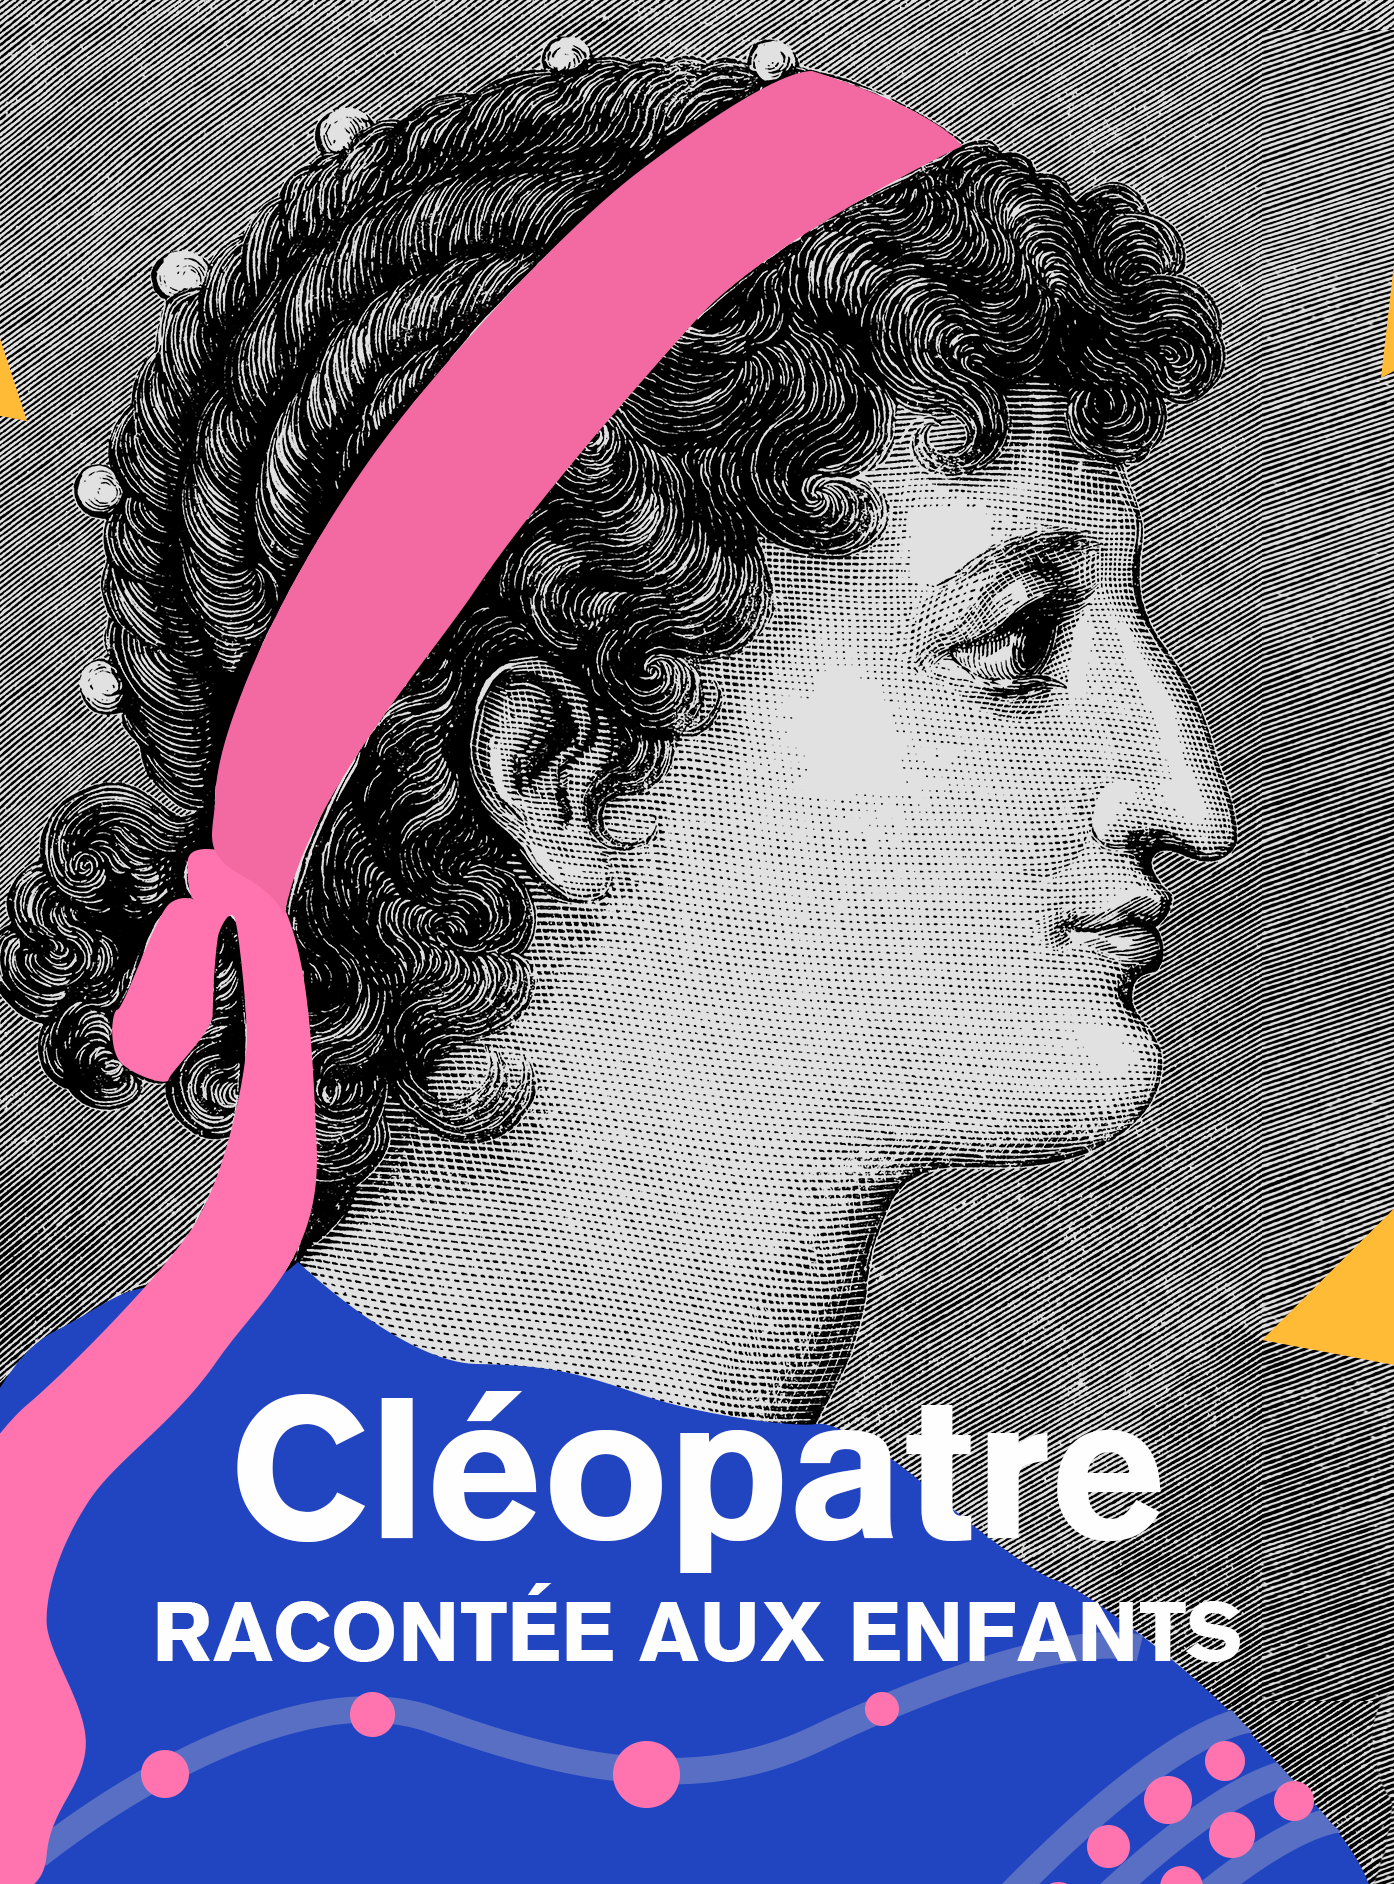 Cléopâtre, racontée aux enfants